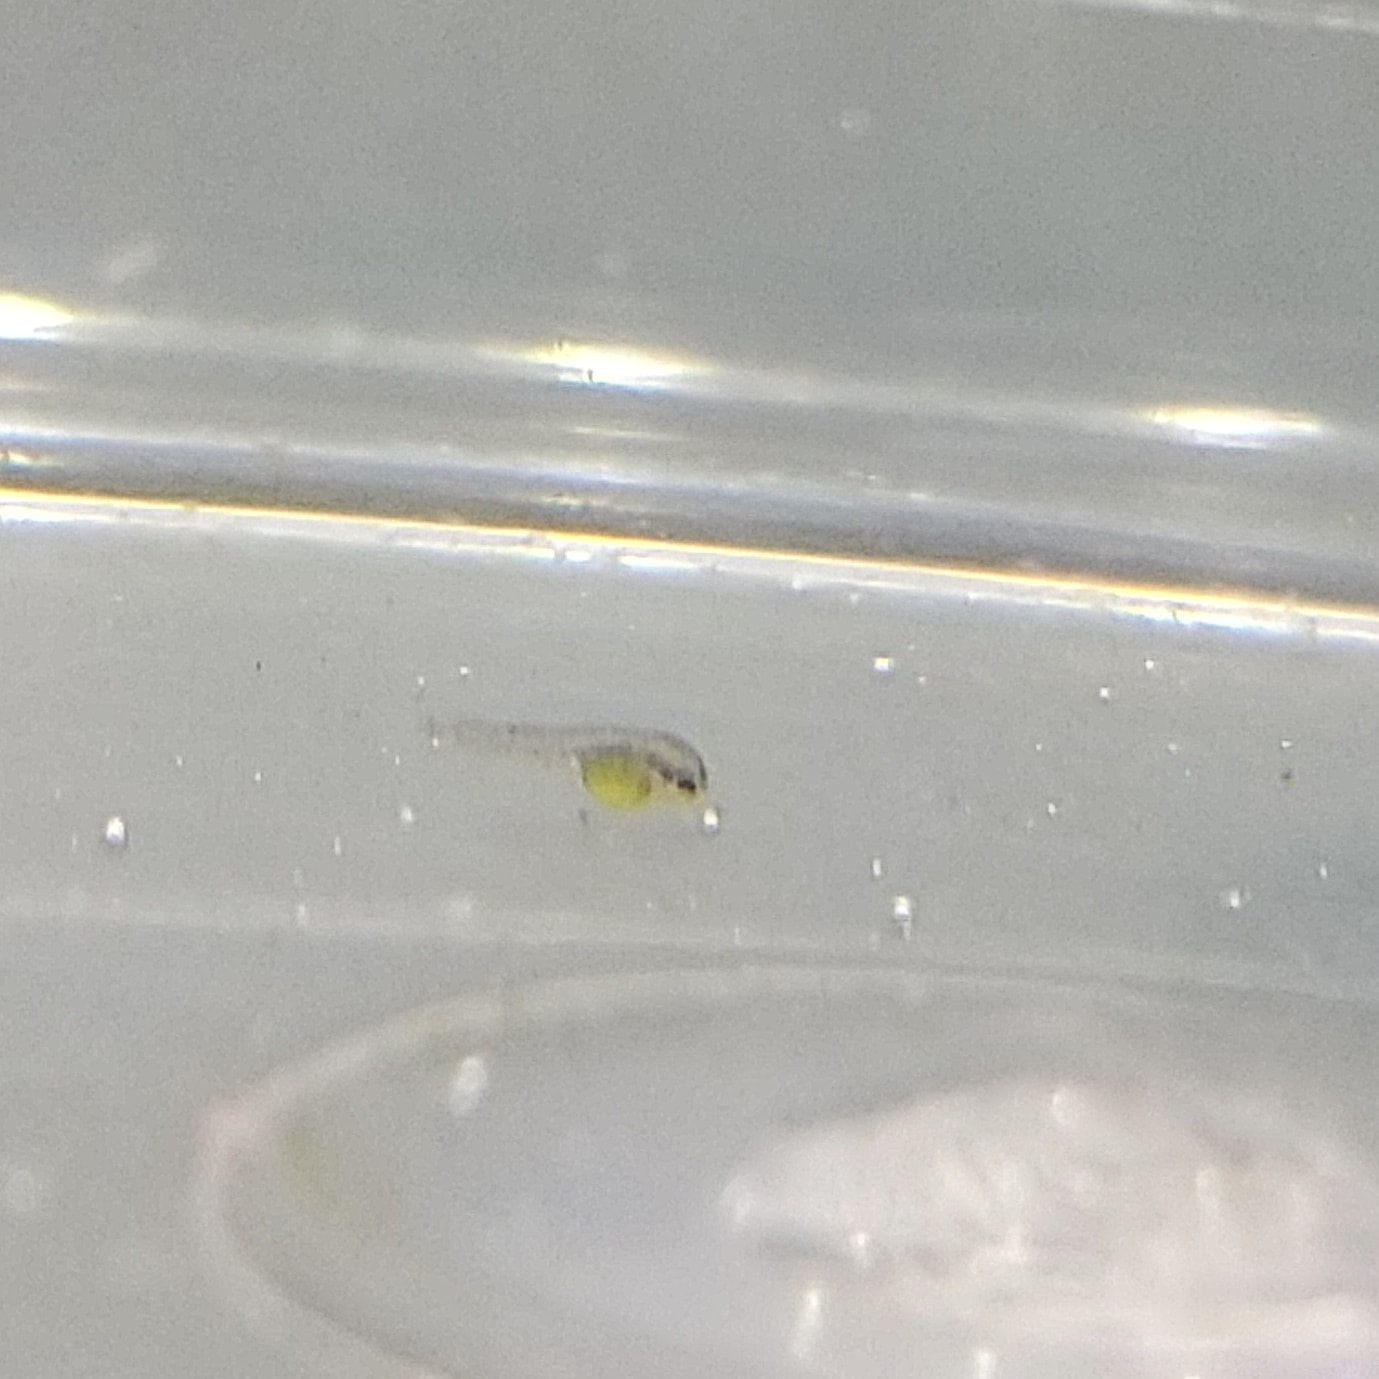 Ice オトシンネグロの稚魚発見 初めてネグロ繁殖した 可愛い オトシンネグロ 稚魚 T Co Js2wrjvvrq Twitter